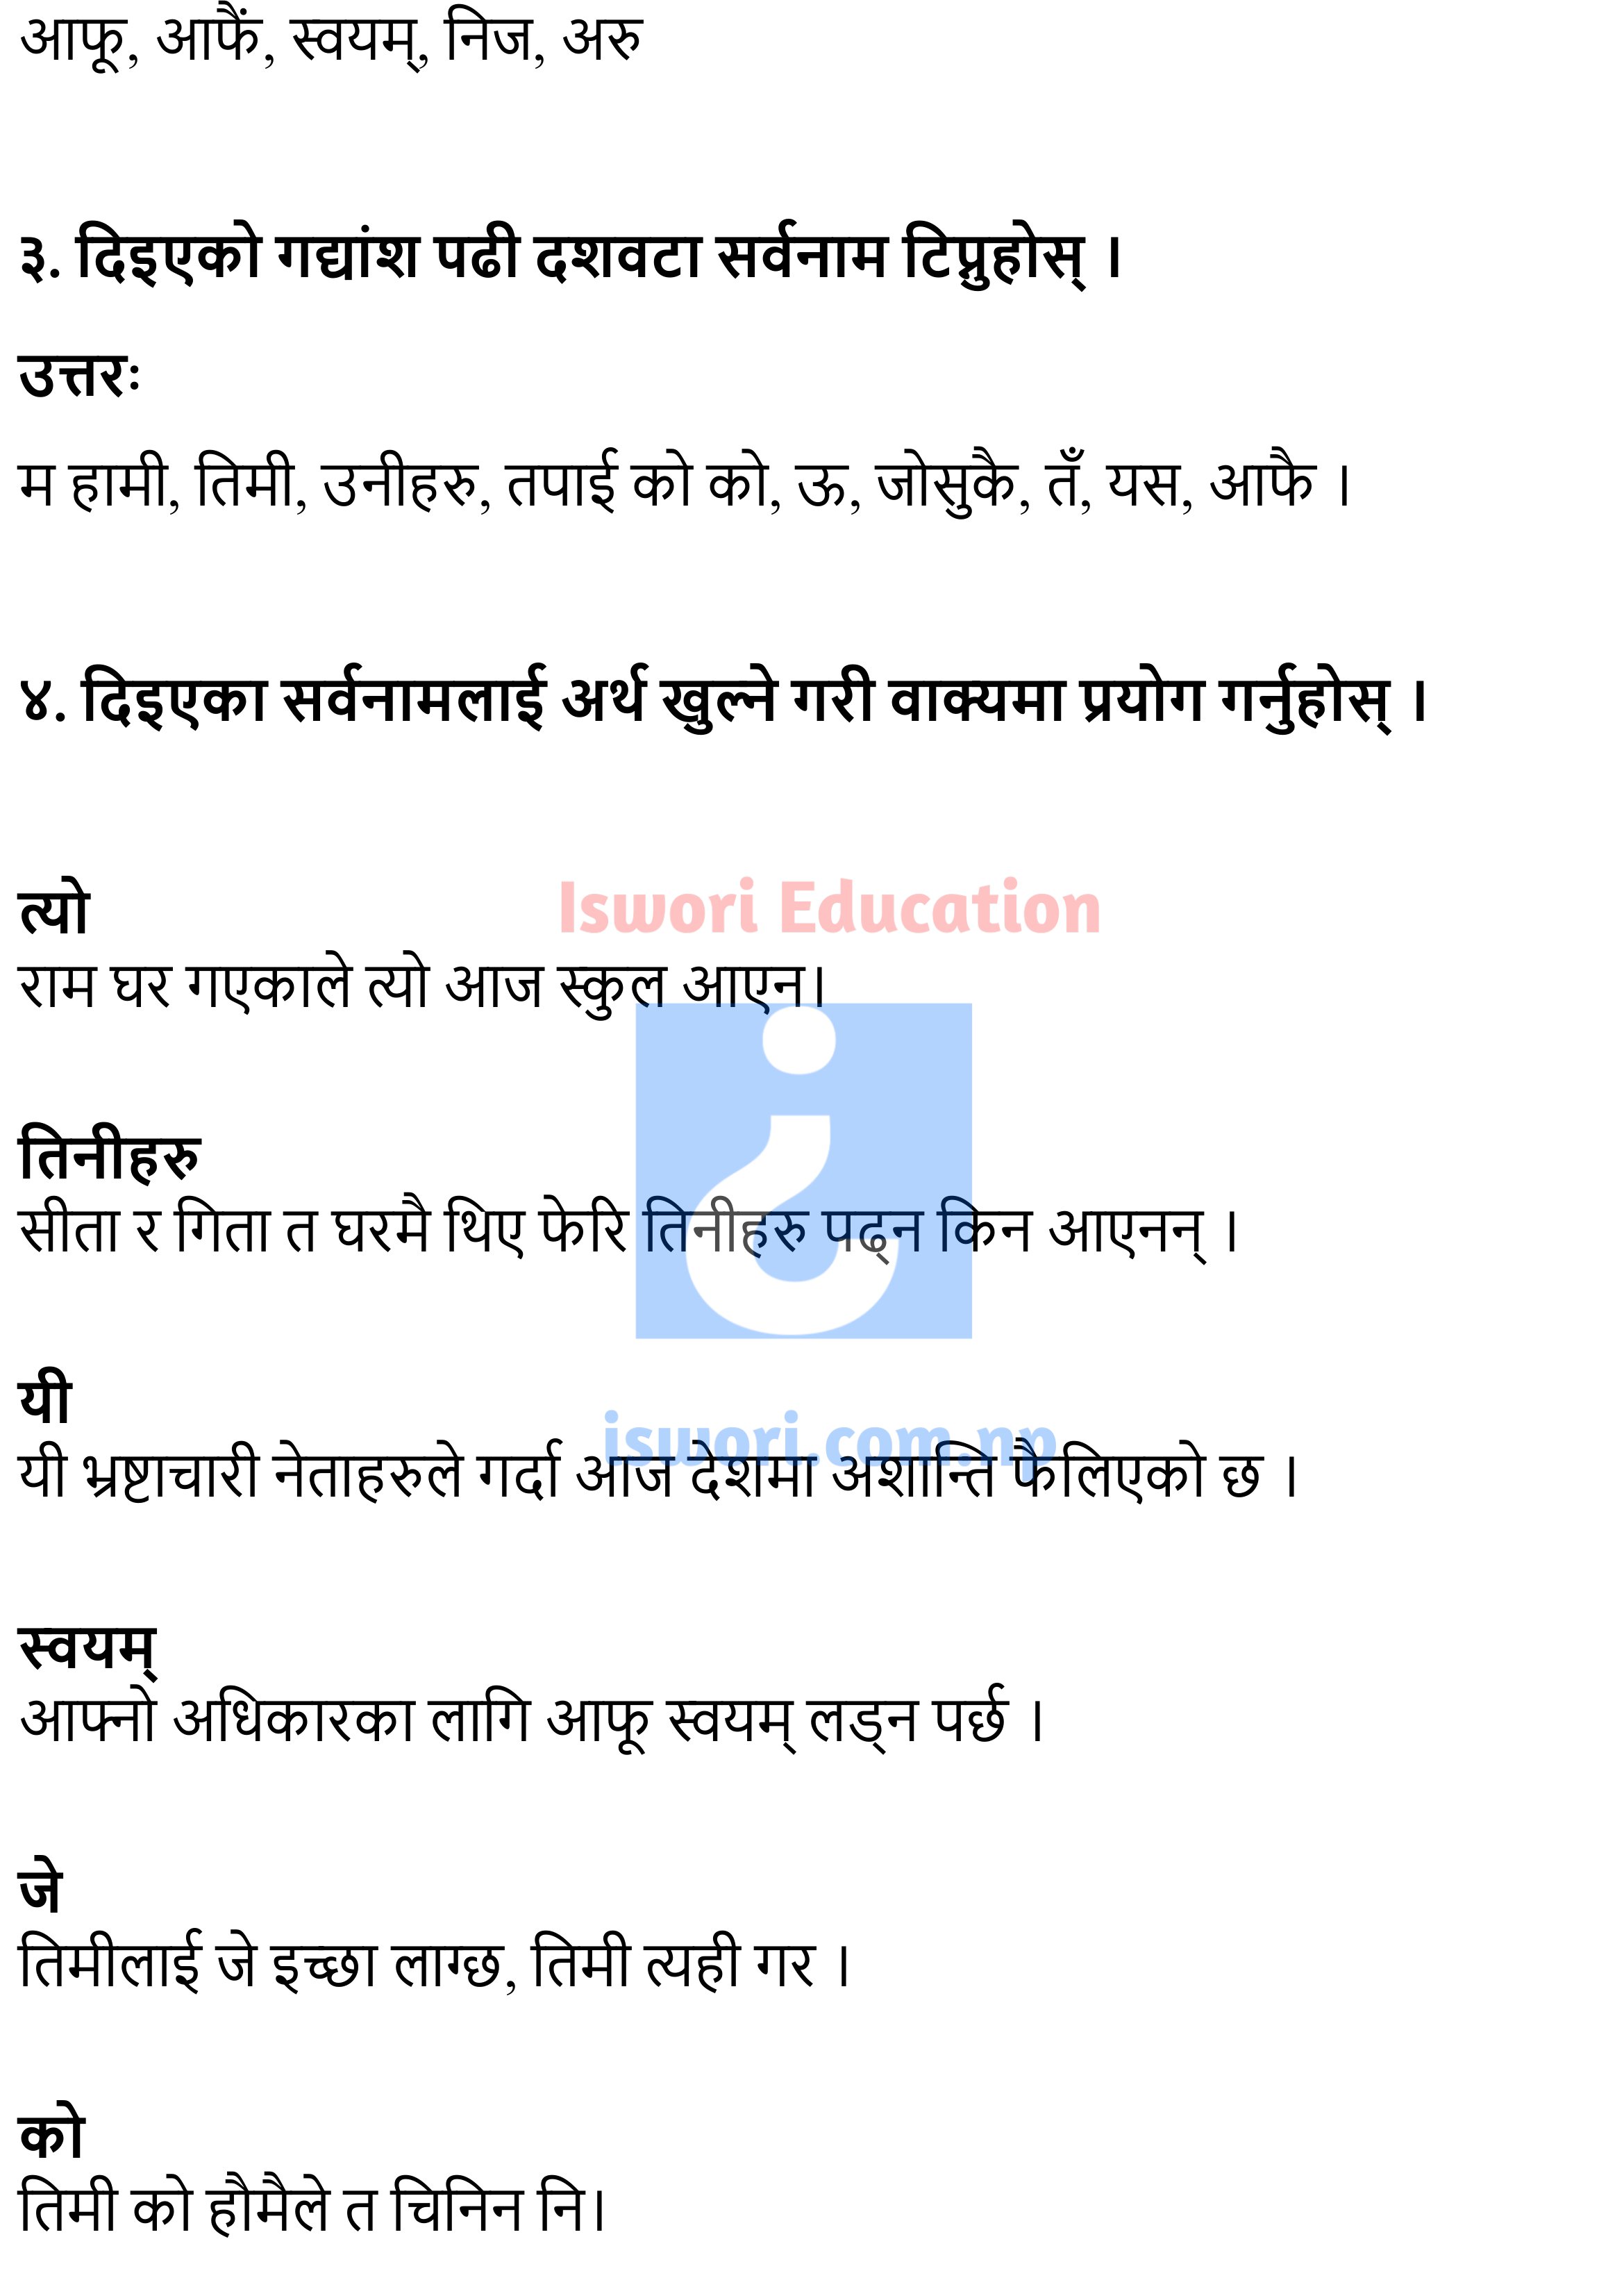 Sanskriti ko Naya Yatra Exercise, Summary - Class 11 Nepali Chapter 3 Exercise